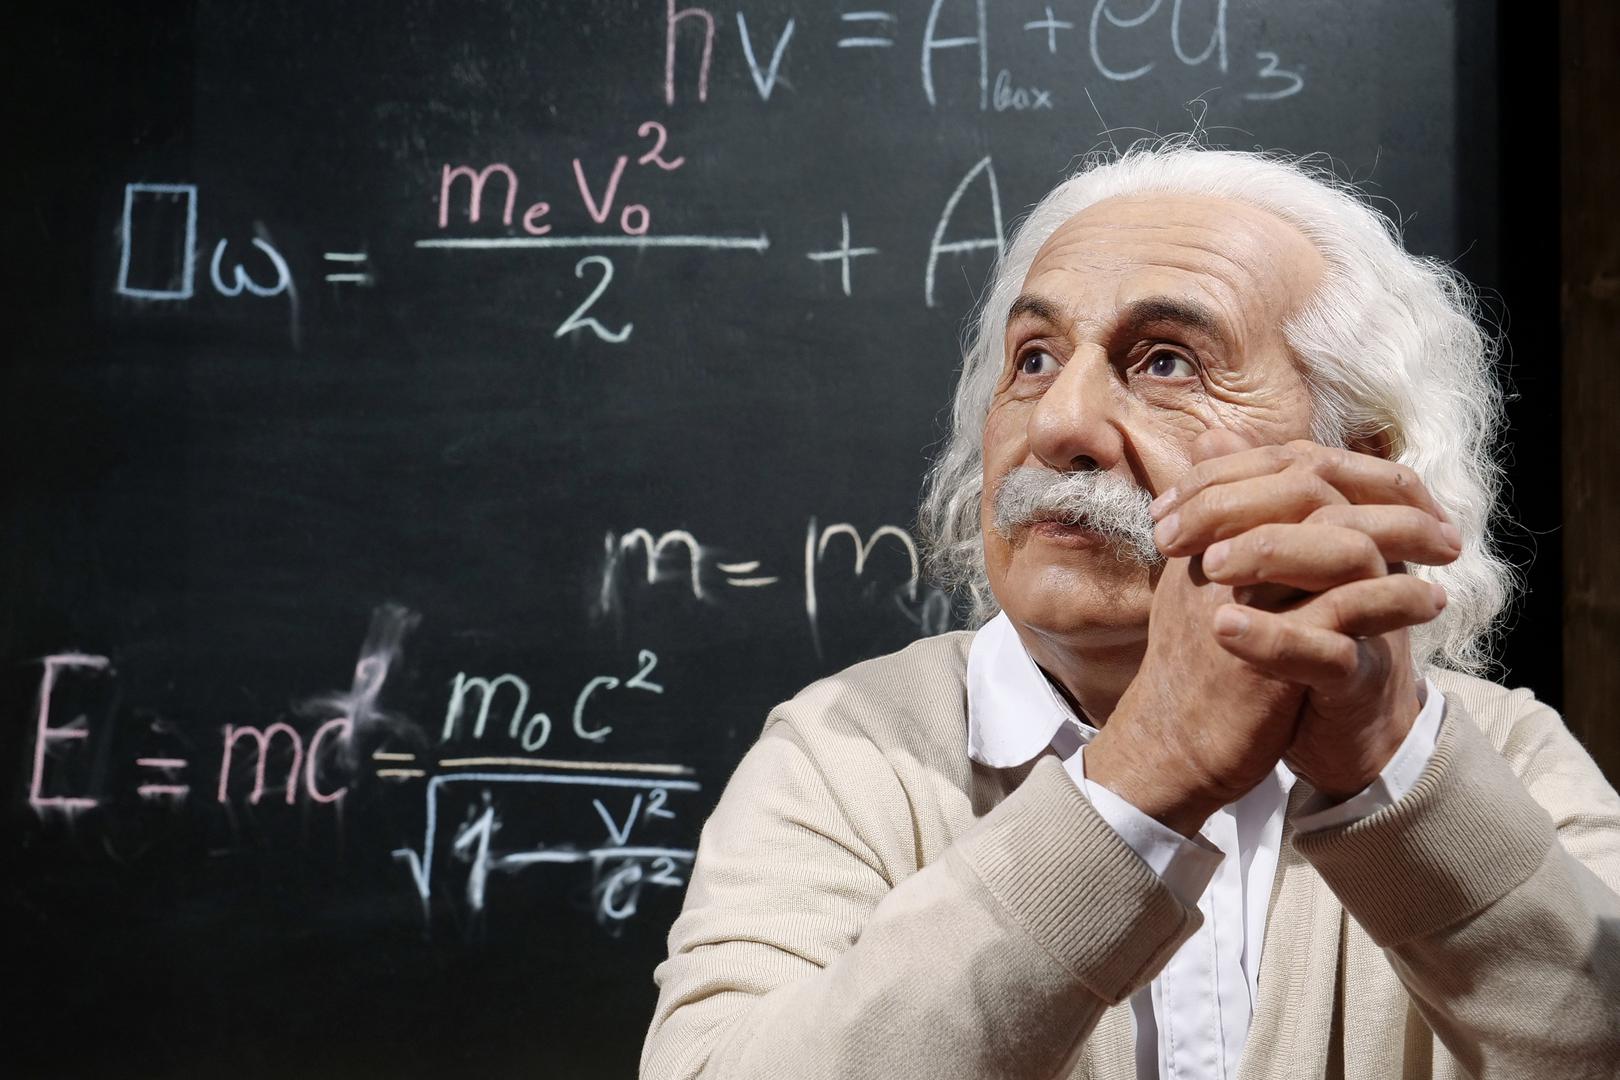 Drug njemački dom Alberta Einsteina: Rođen je u Ulmu, a njegova se obitelj kasnije preselila u München 1880. kada je on imao samo godinu dana. S pet godina dječak je krenuo u katoličku osnovnu školu u glavnom gradu Bavarske. Iako ga danas poznajemo i poštujemo kao jednog od najutjecajnijih fizičara svih vremena, Einstein je u mladosti radio i povremene poslove. Navodno je radio na Oktoberfestu 1896. 